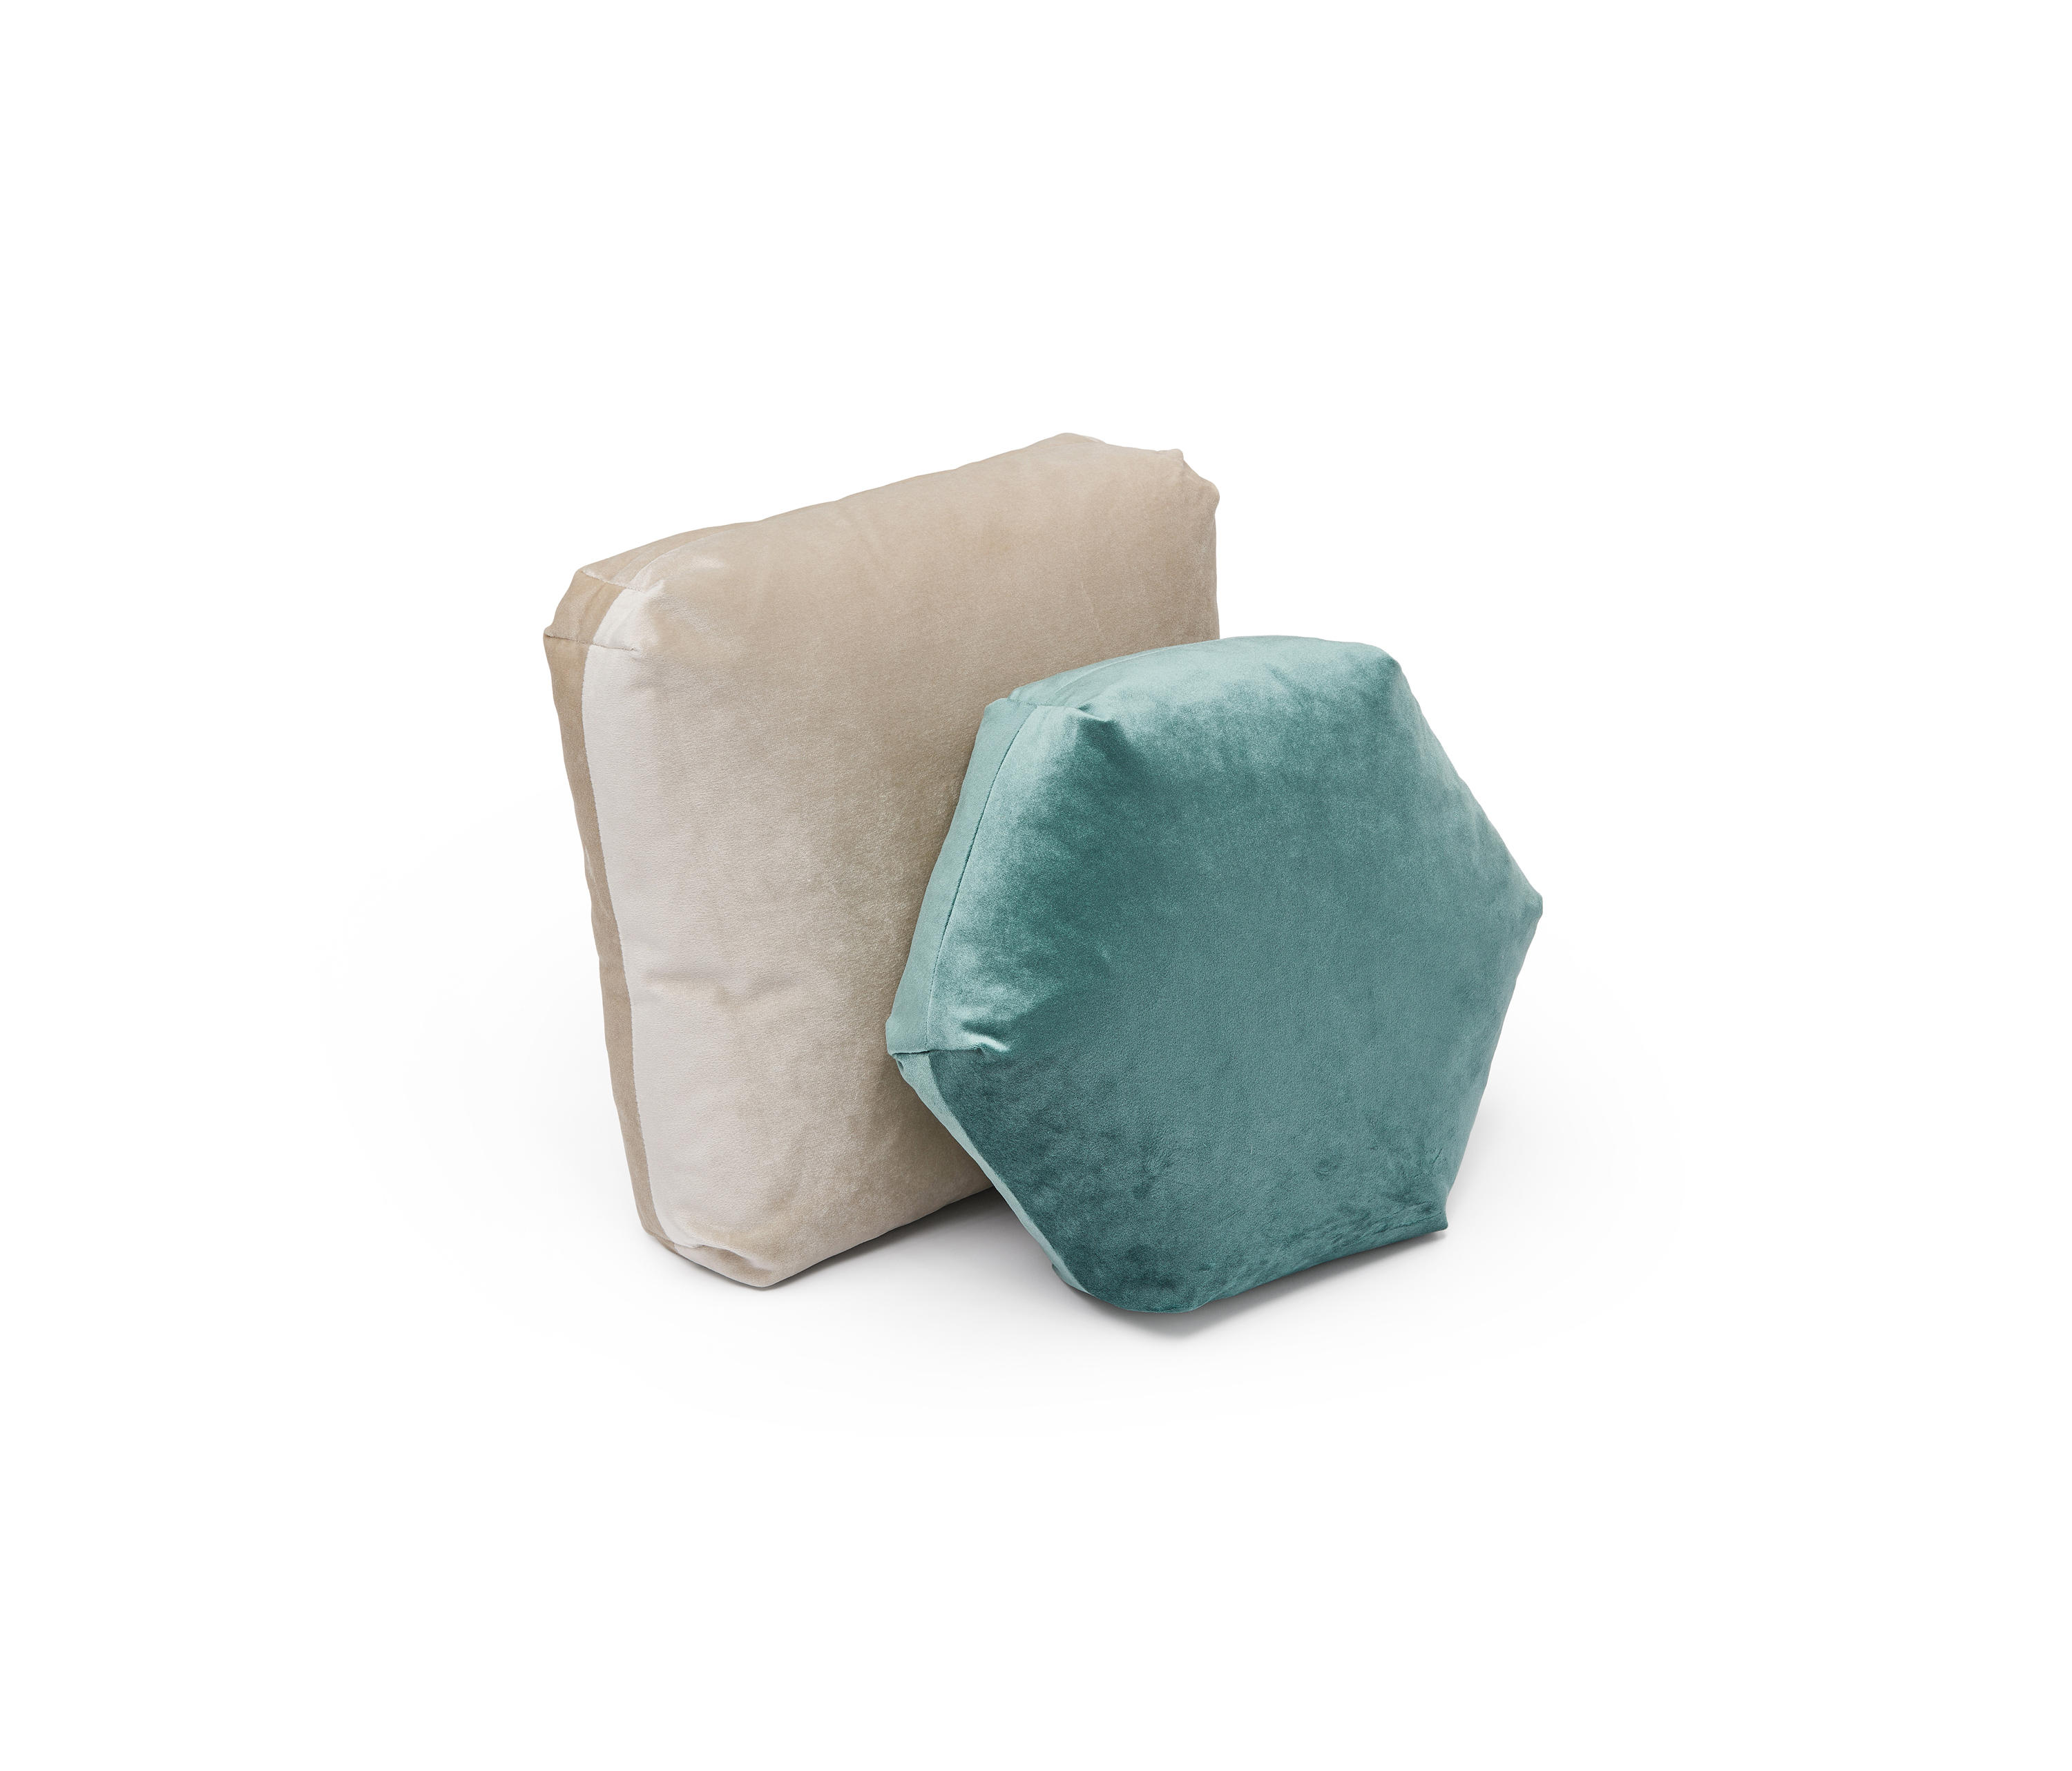 Plus Square Ivory & muebles de diseño | Architonic